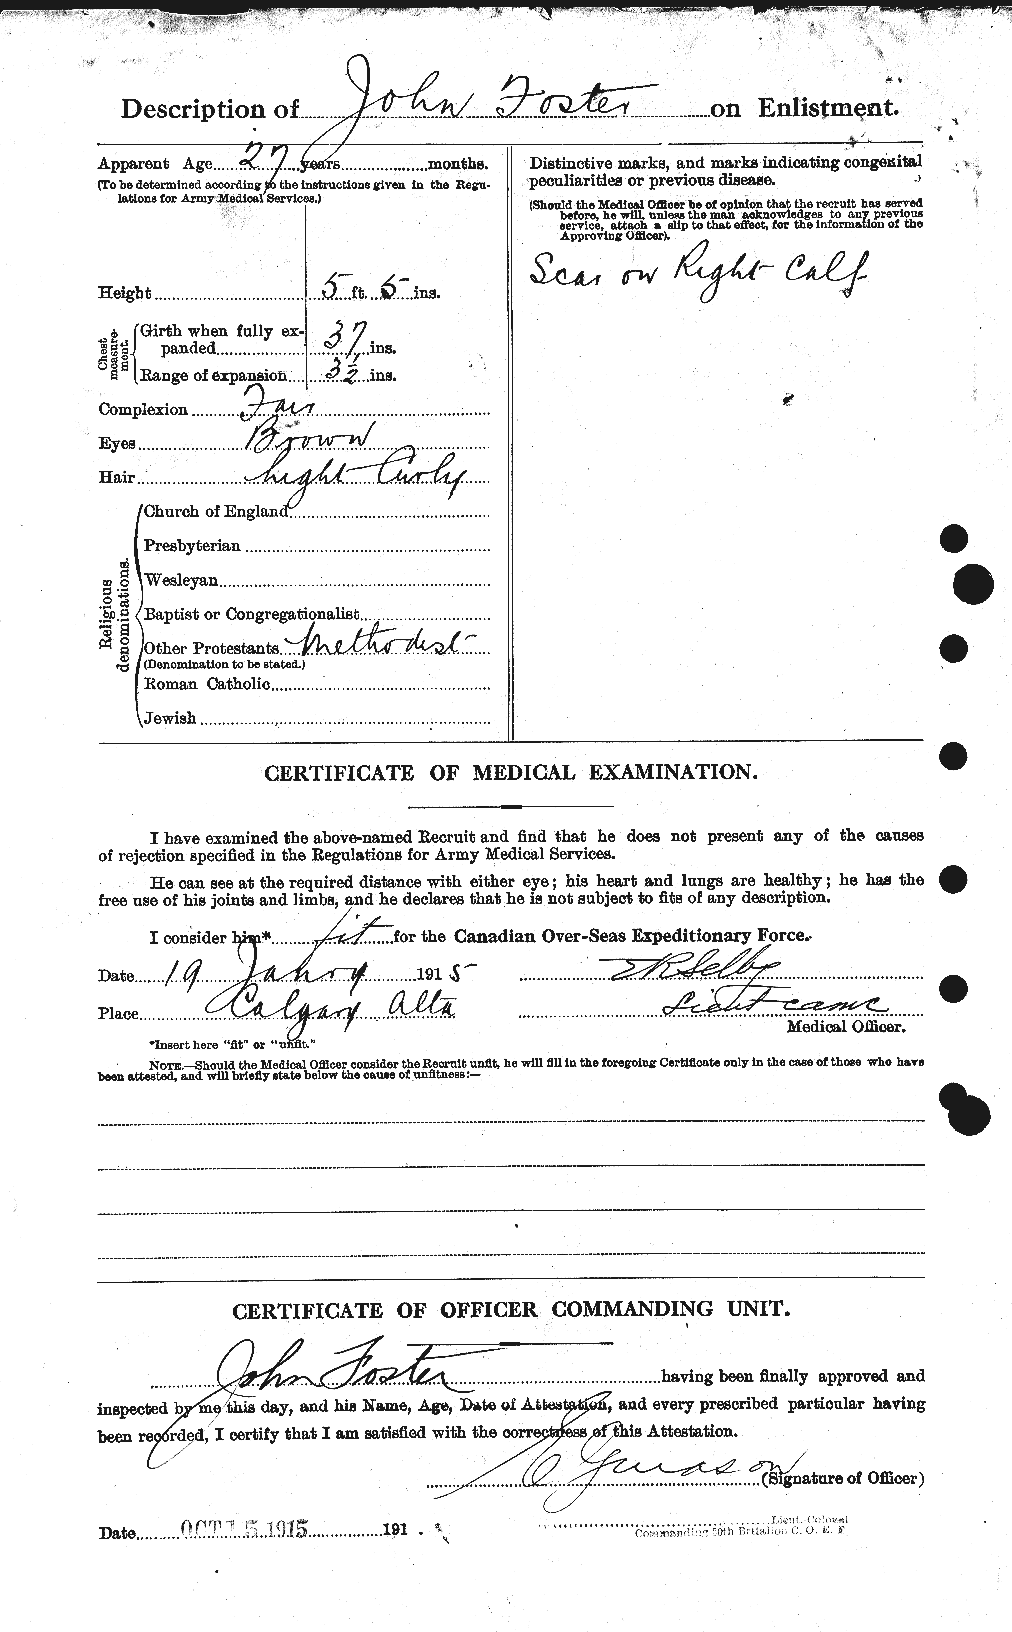 Dossiers du Personnel de la Première Guerre mondiale - CEC 333344b